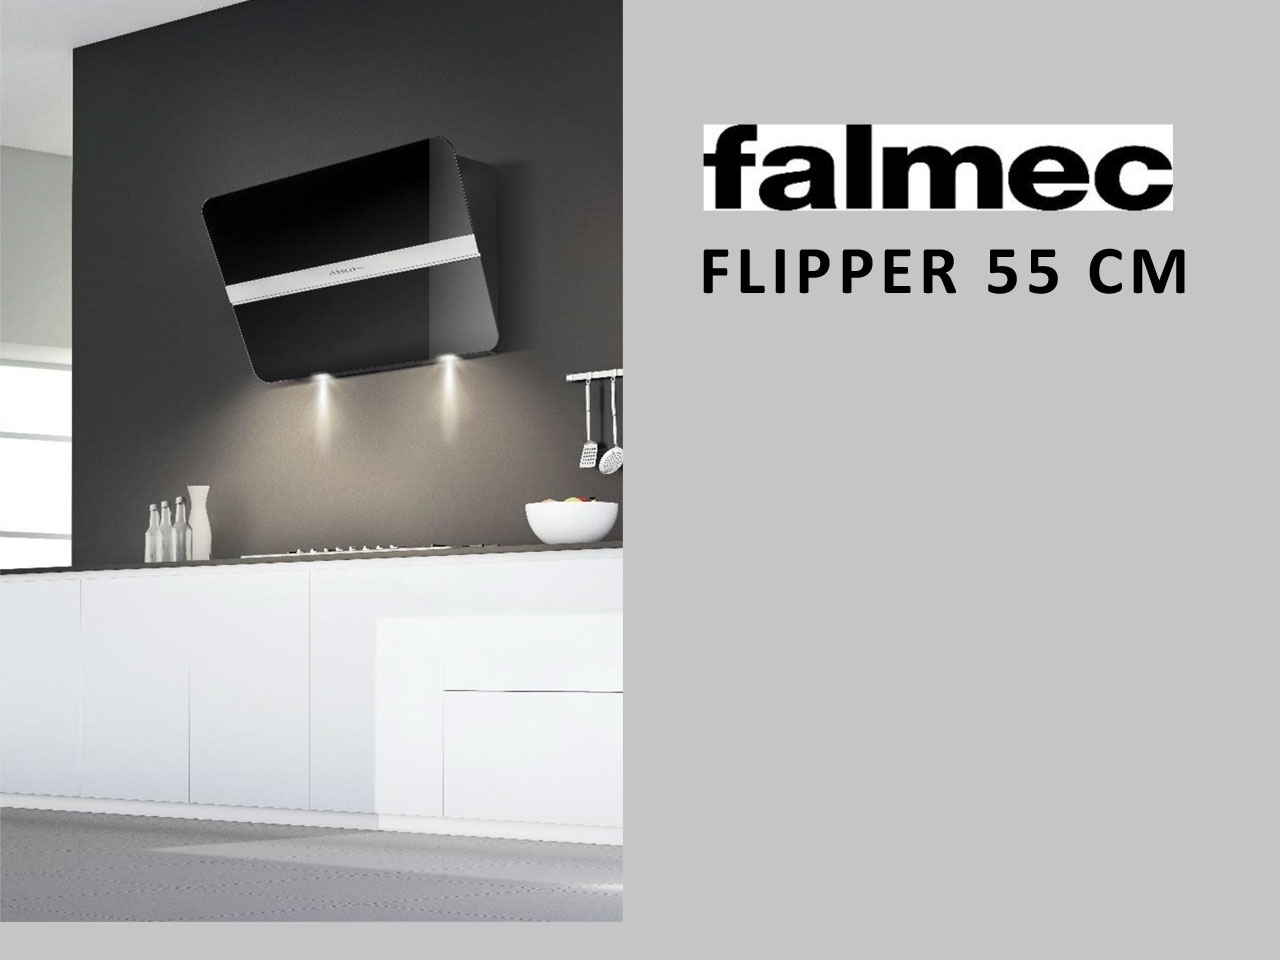 Falmec introduit le Dynamic Led Light sur ses hottes encastrables